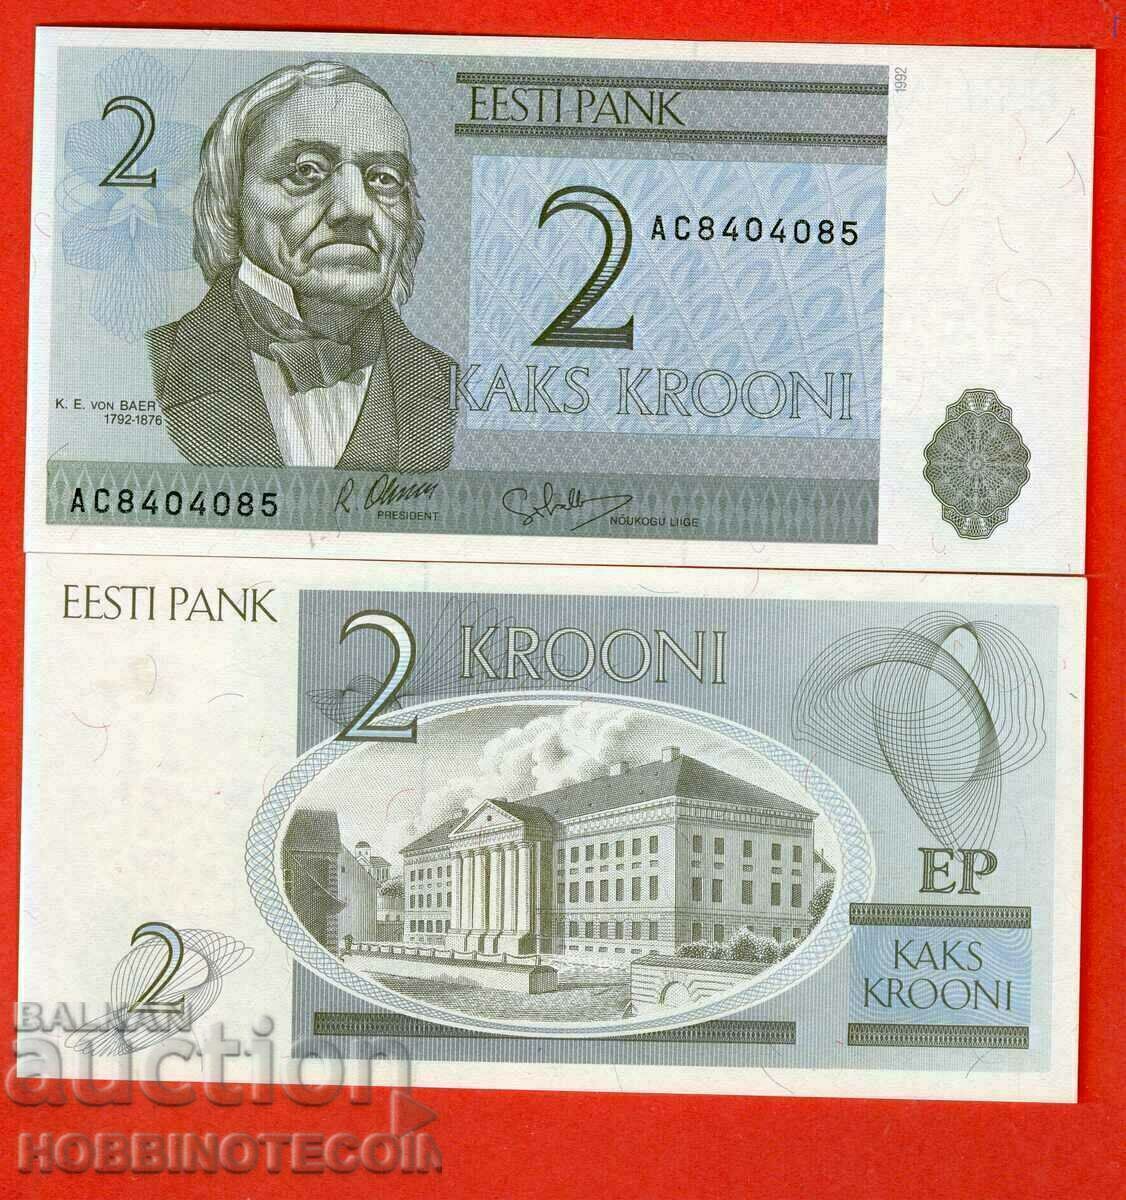 ESTONIA ESTONIA 2 Krone emisiune 1992 emisiune NOU UNC